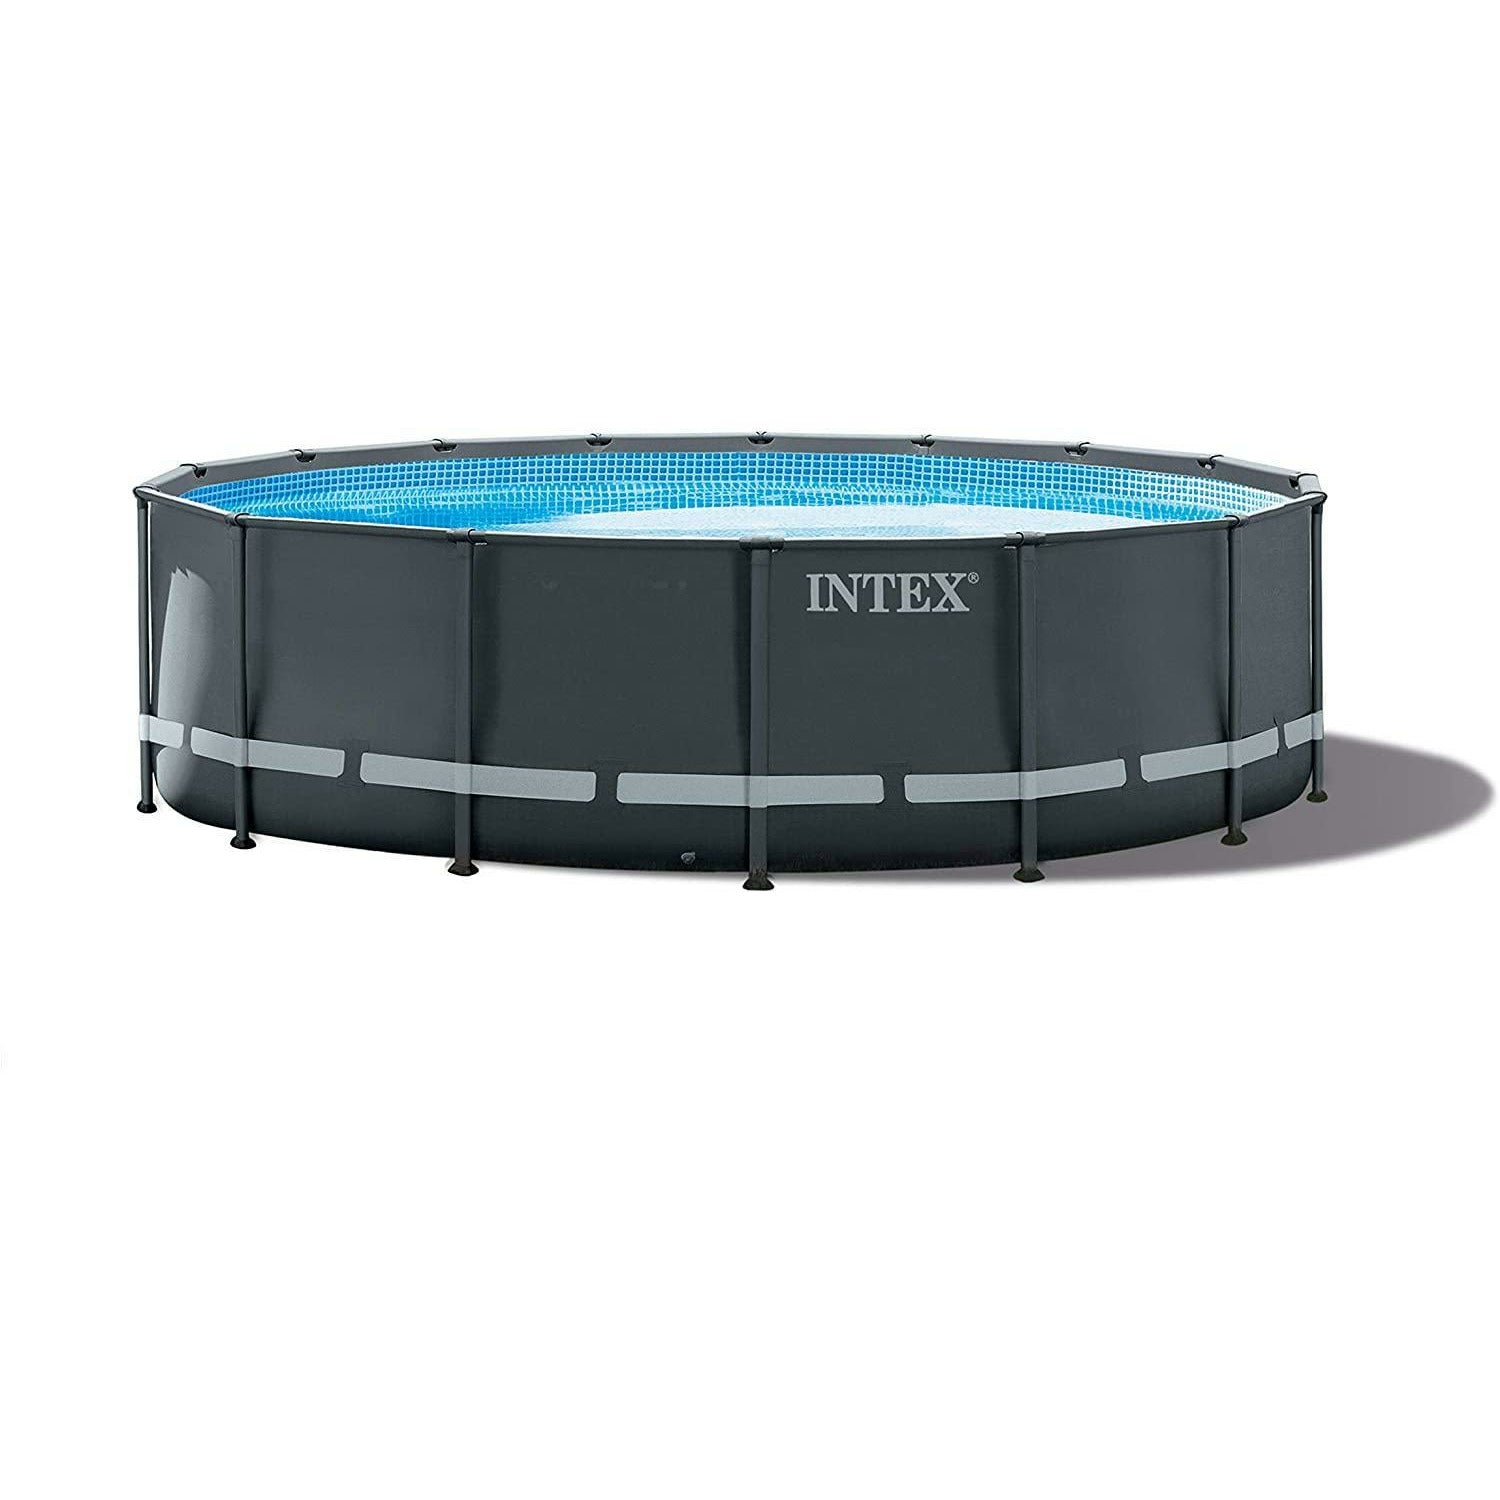 Intex Ultra XTR Pool 16x48 - Pelican Shops